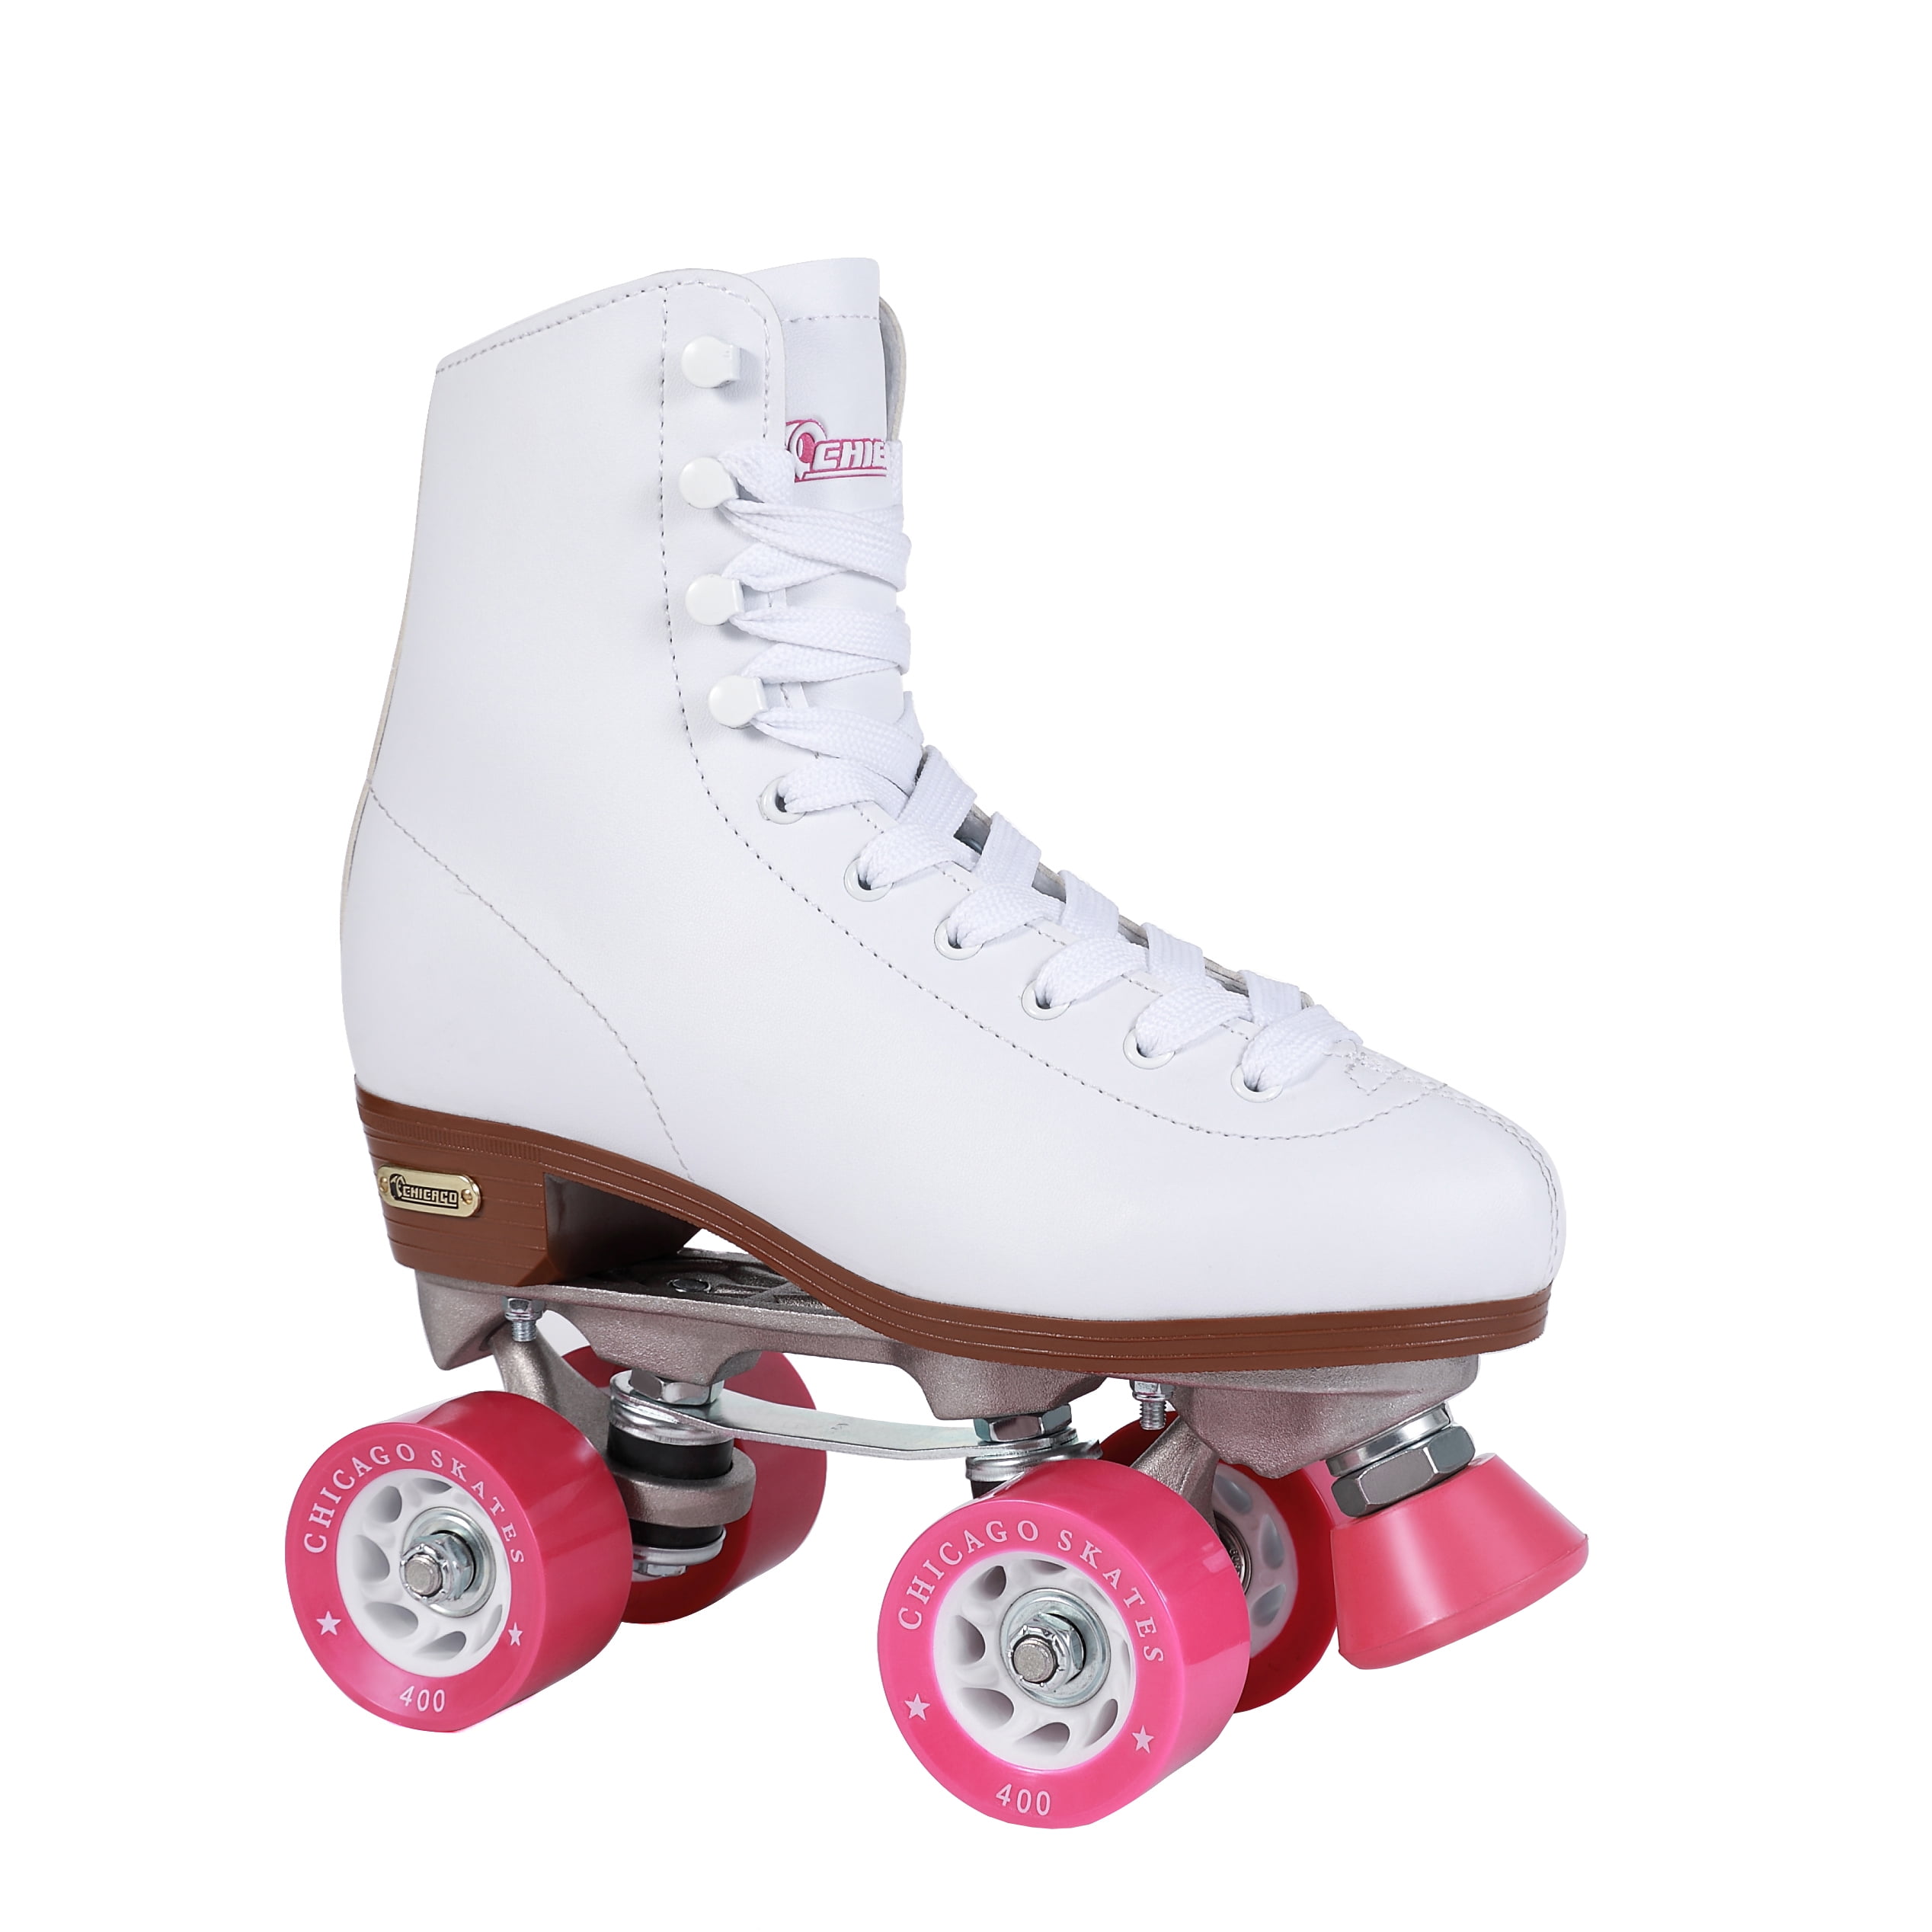 Chicago Bullet Ladies Speed Roller Skate –White Size 8 